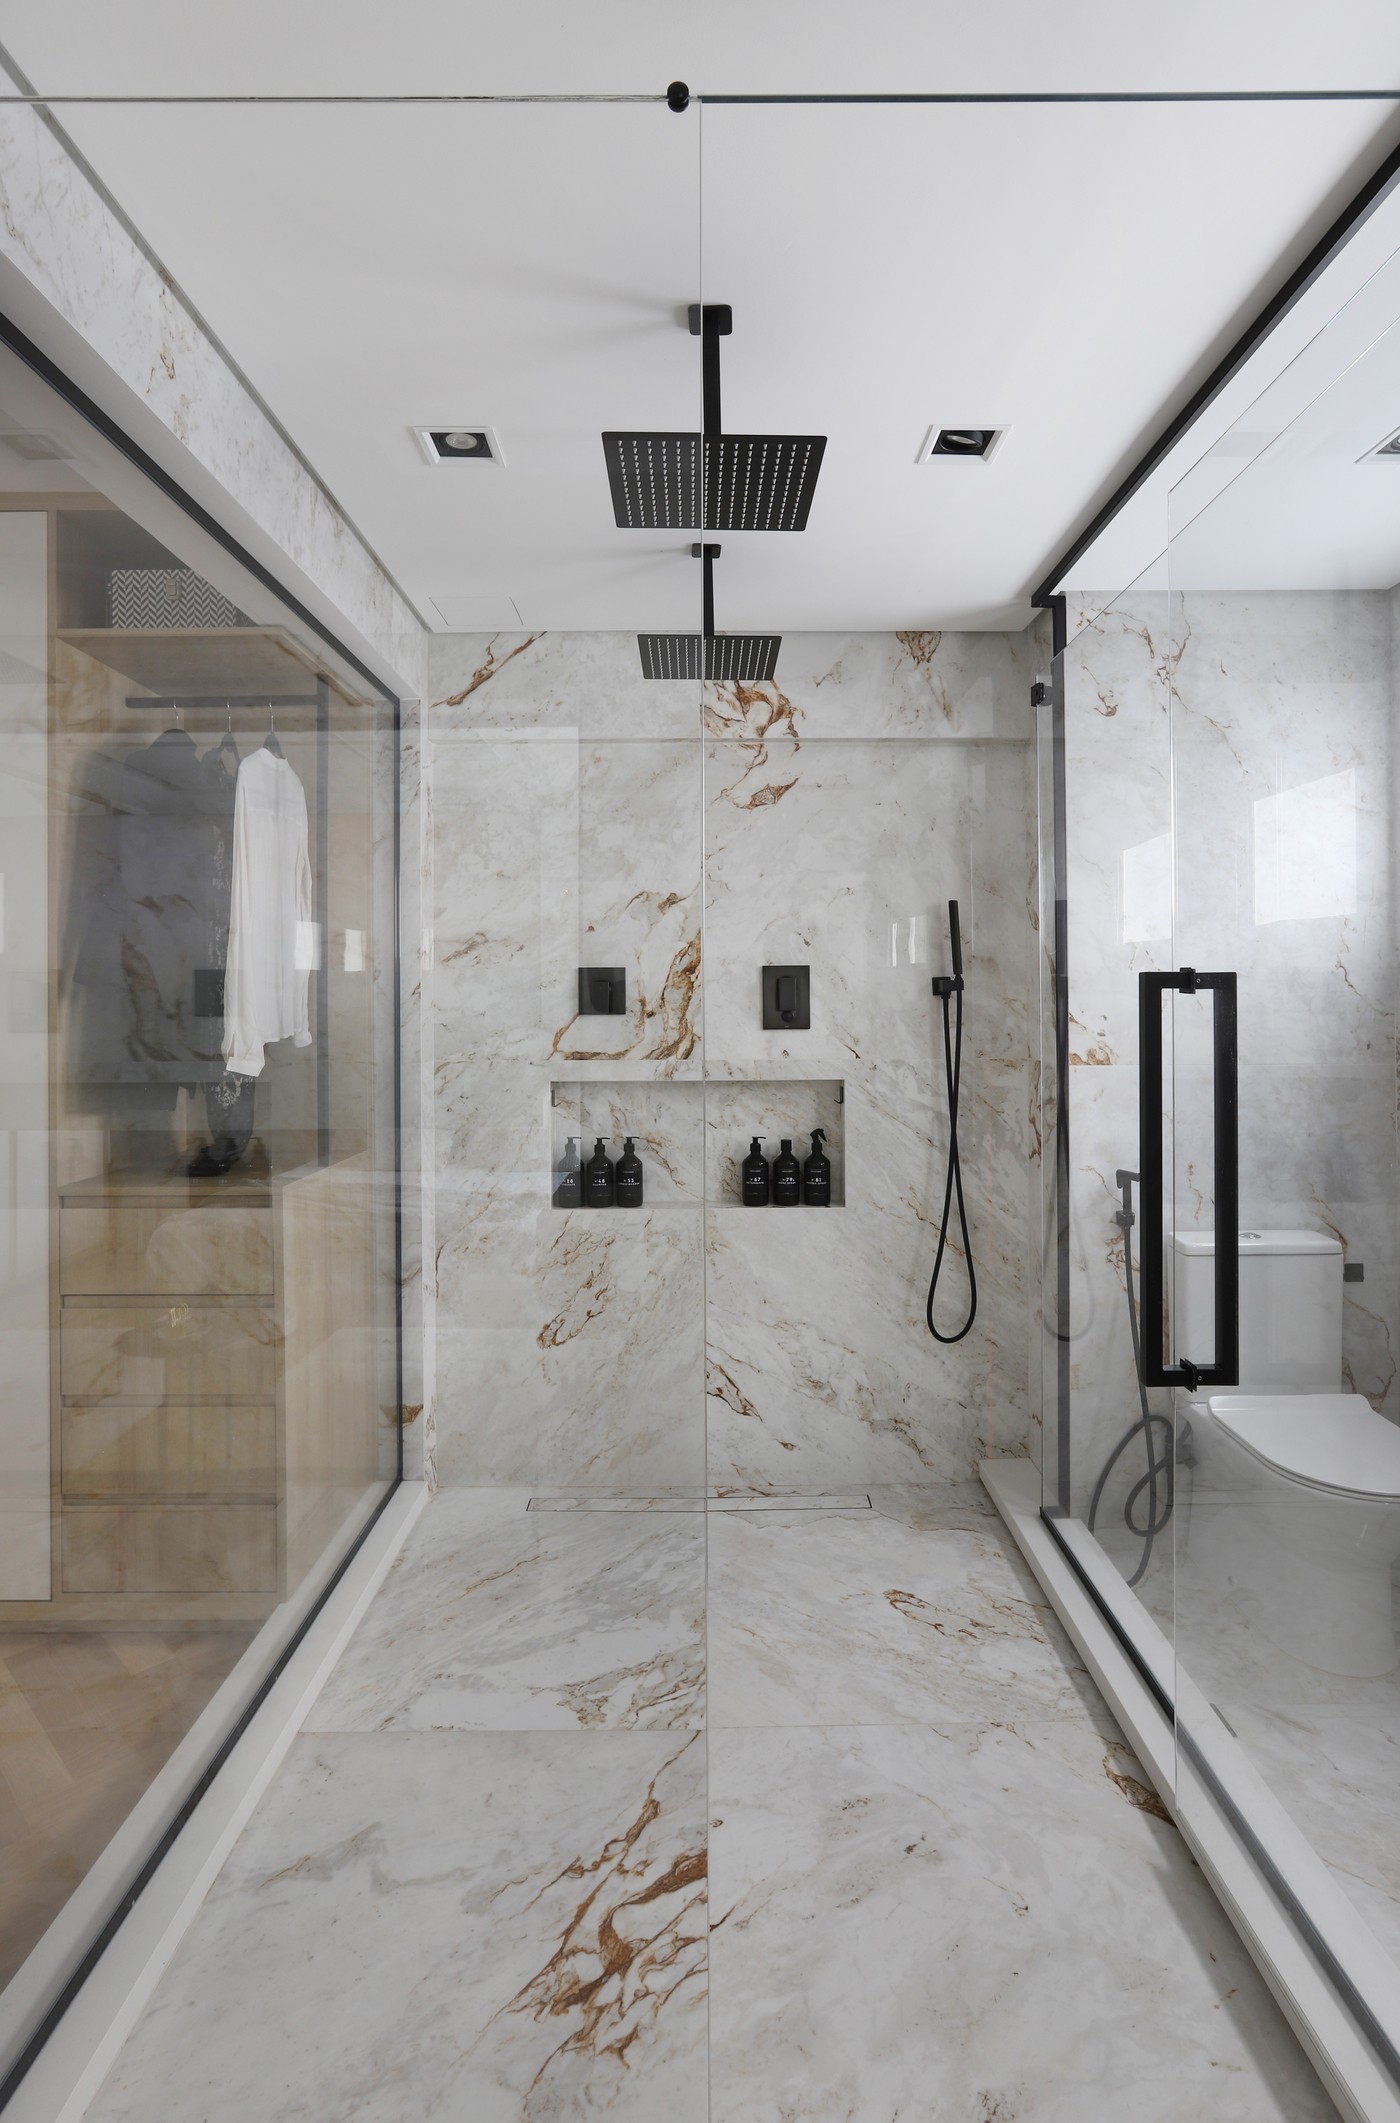 Décor do dia: banheiro integrado ao quarto tem muita luminosidade natural e tons claros (Foto: Mariana Orsi)